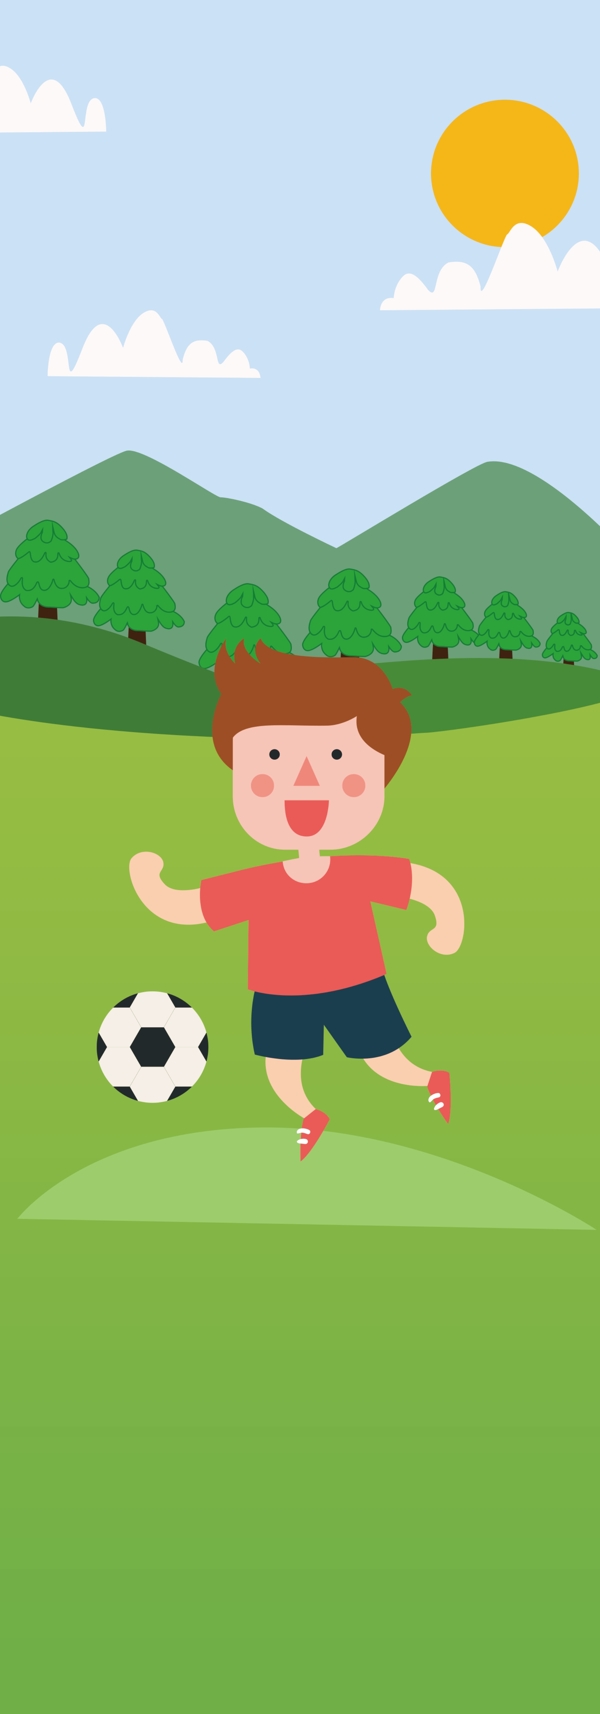 卡通儿童小朋友踢足球玩耍运动